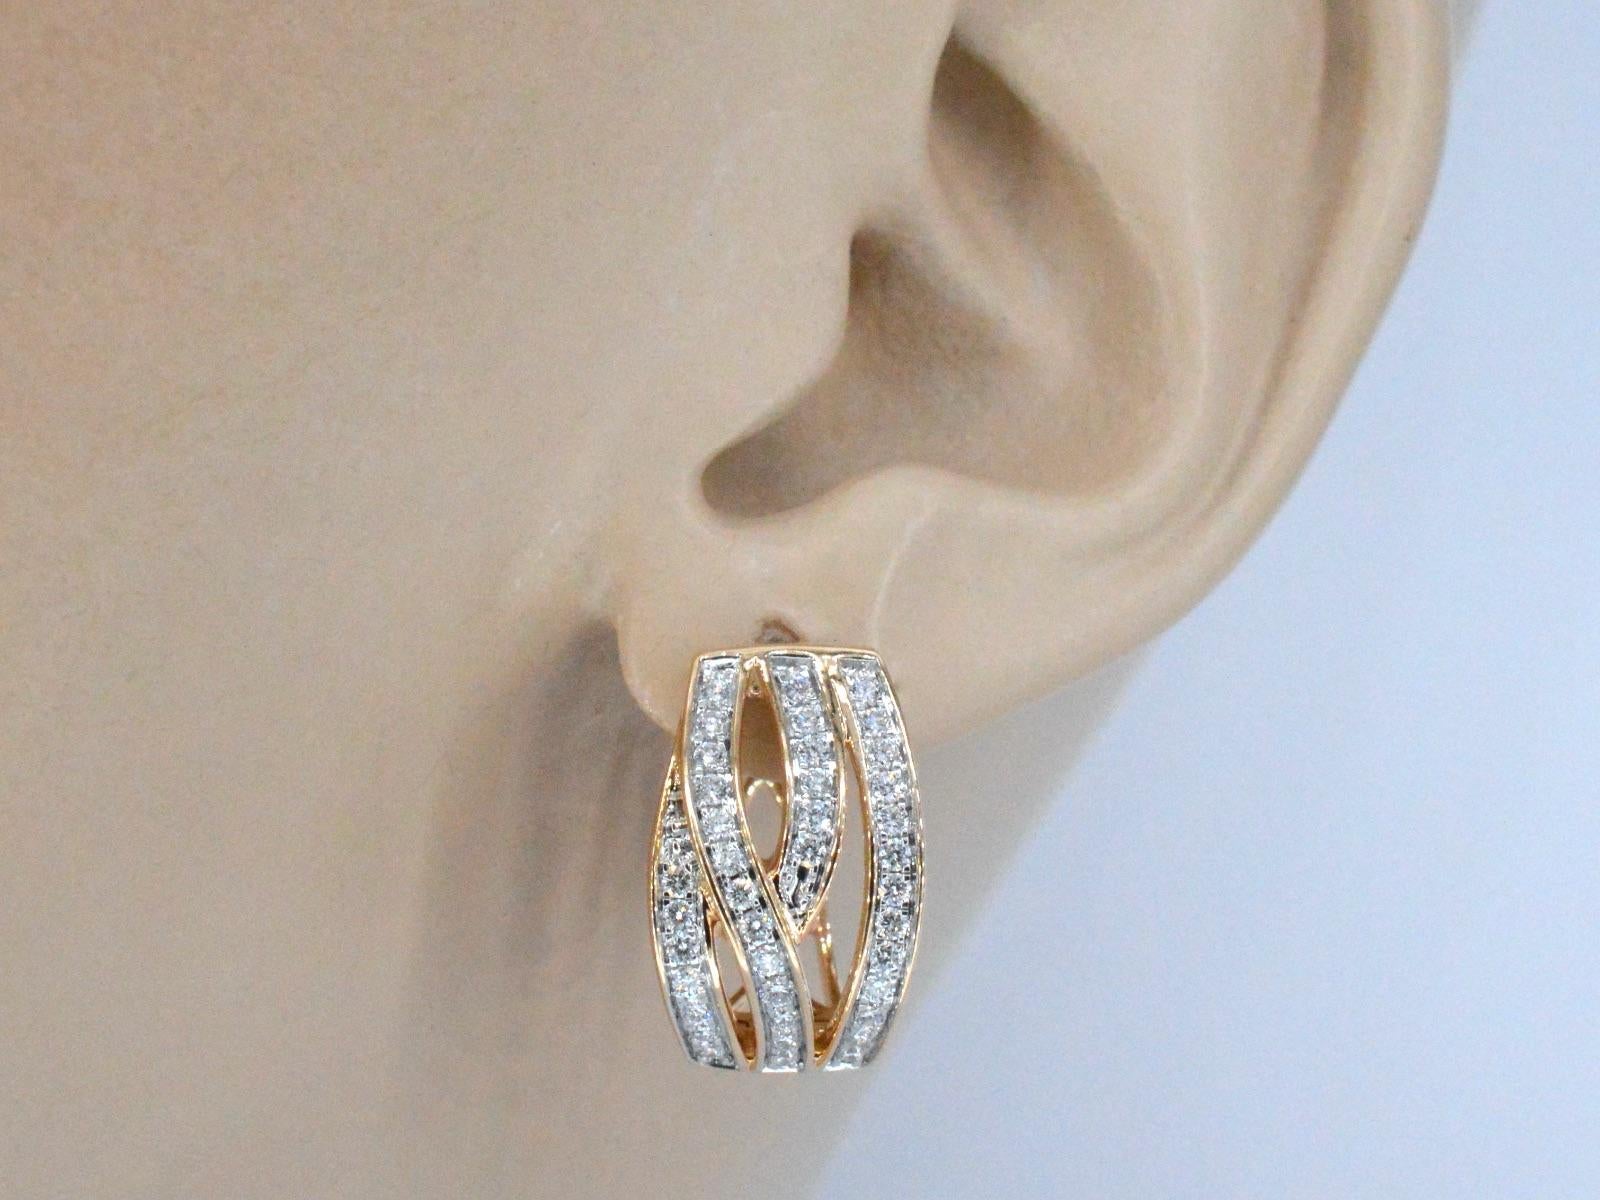 Ces boucles d'oreilles en or rose sont un superbe bijou qui présente des diamants de taille brillante dans un design unique et élégant. Les diamants sont sertis de manière experte dans l'or rose pour créer un look élégant et sans faille qui attire